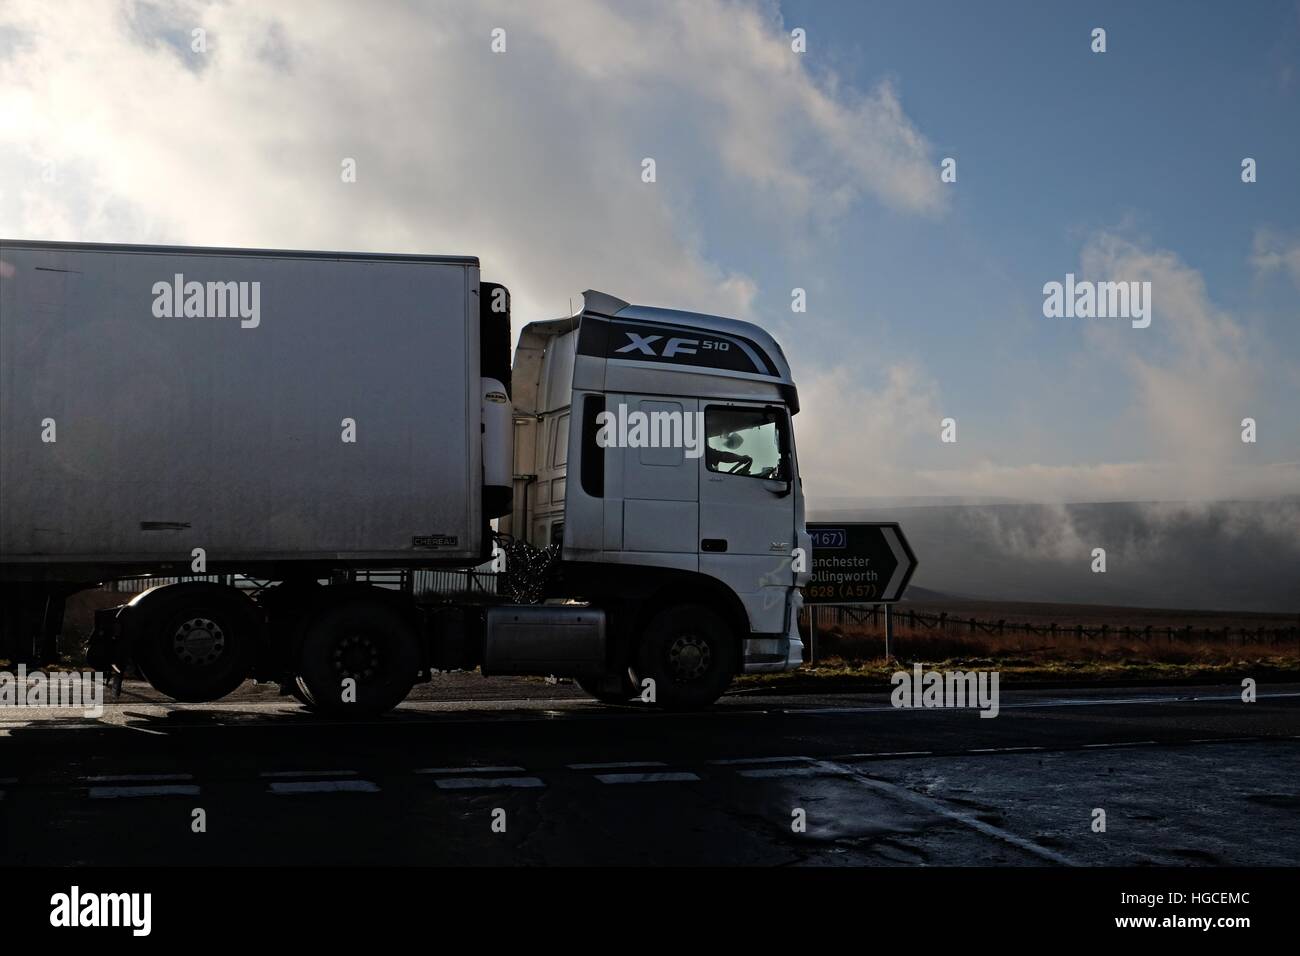 DAF XF camion vide commence sa descente vers l'ouest de l'A628 Woodhead pass dans les nuages bas en hiver Banque D'Images